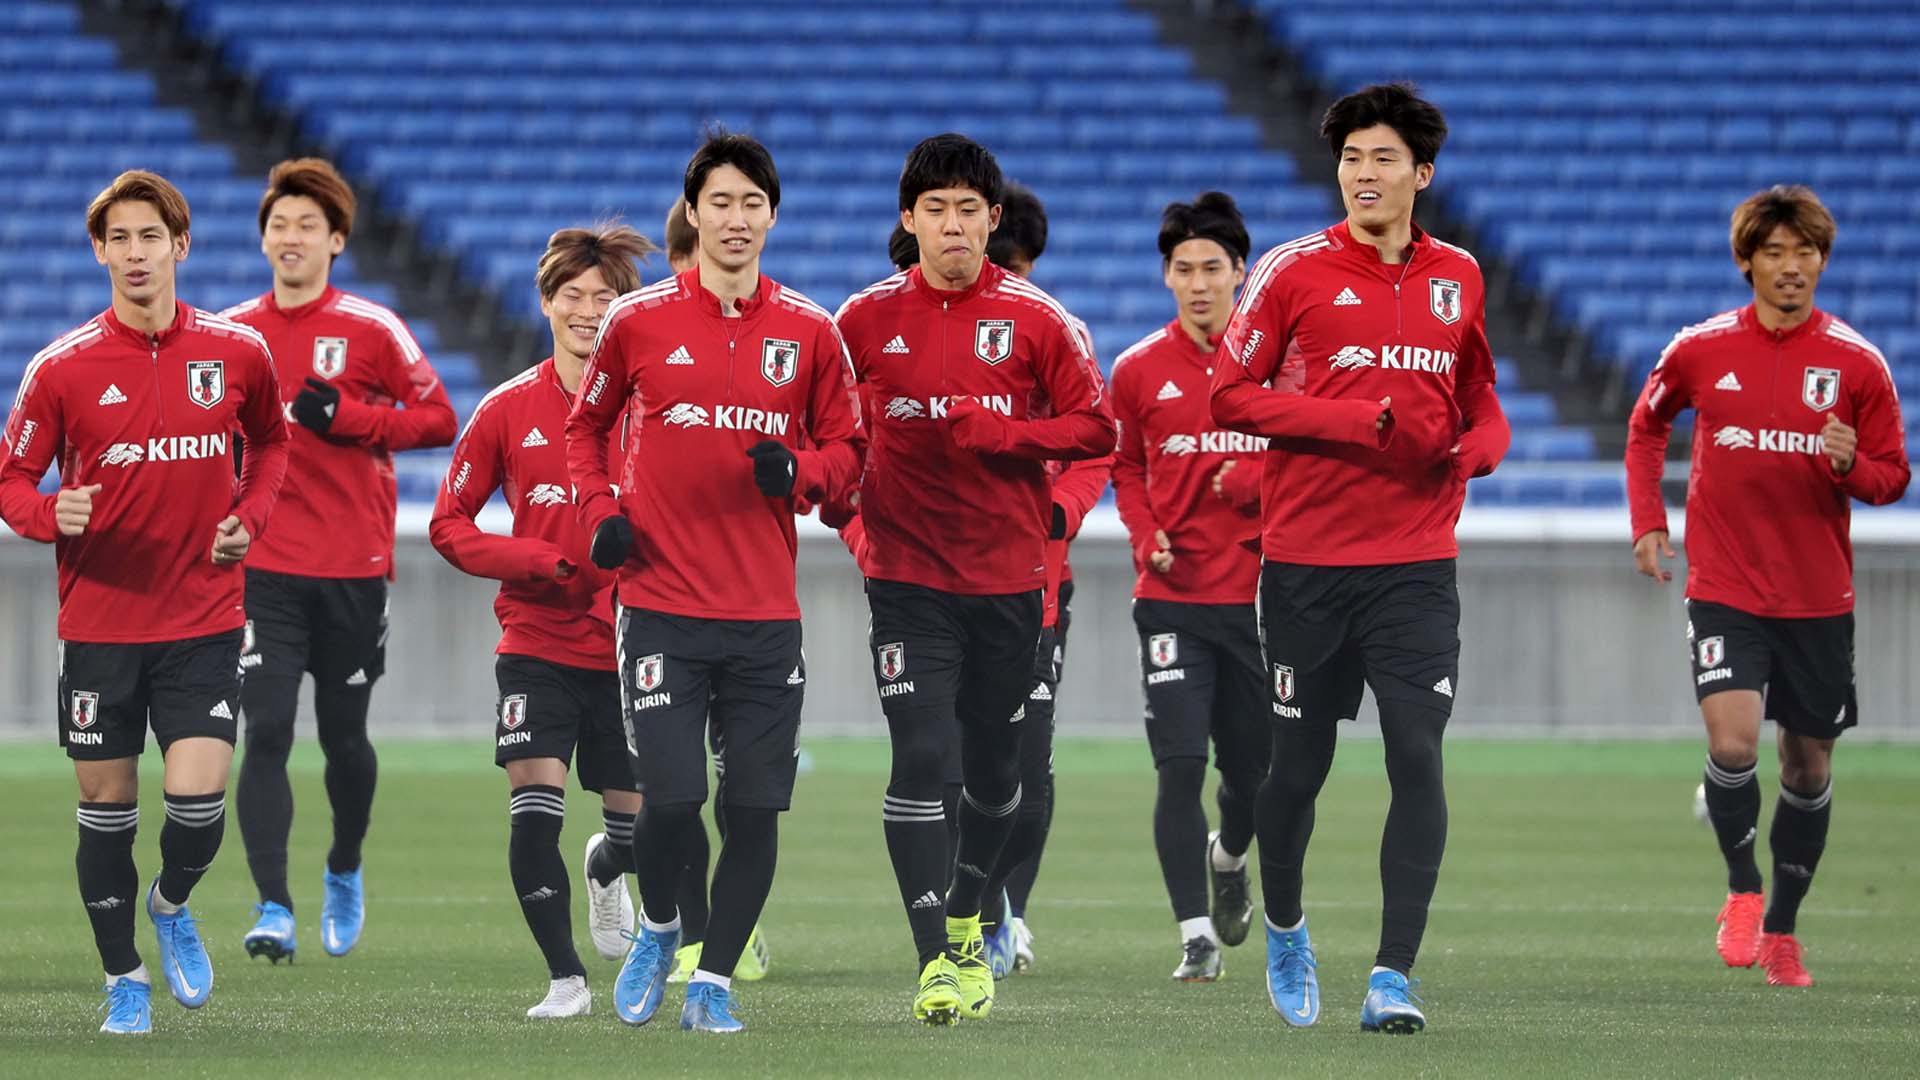 [이슈워치] 오늘 저녁 축구 국가 대표팀이 일본과 대결